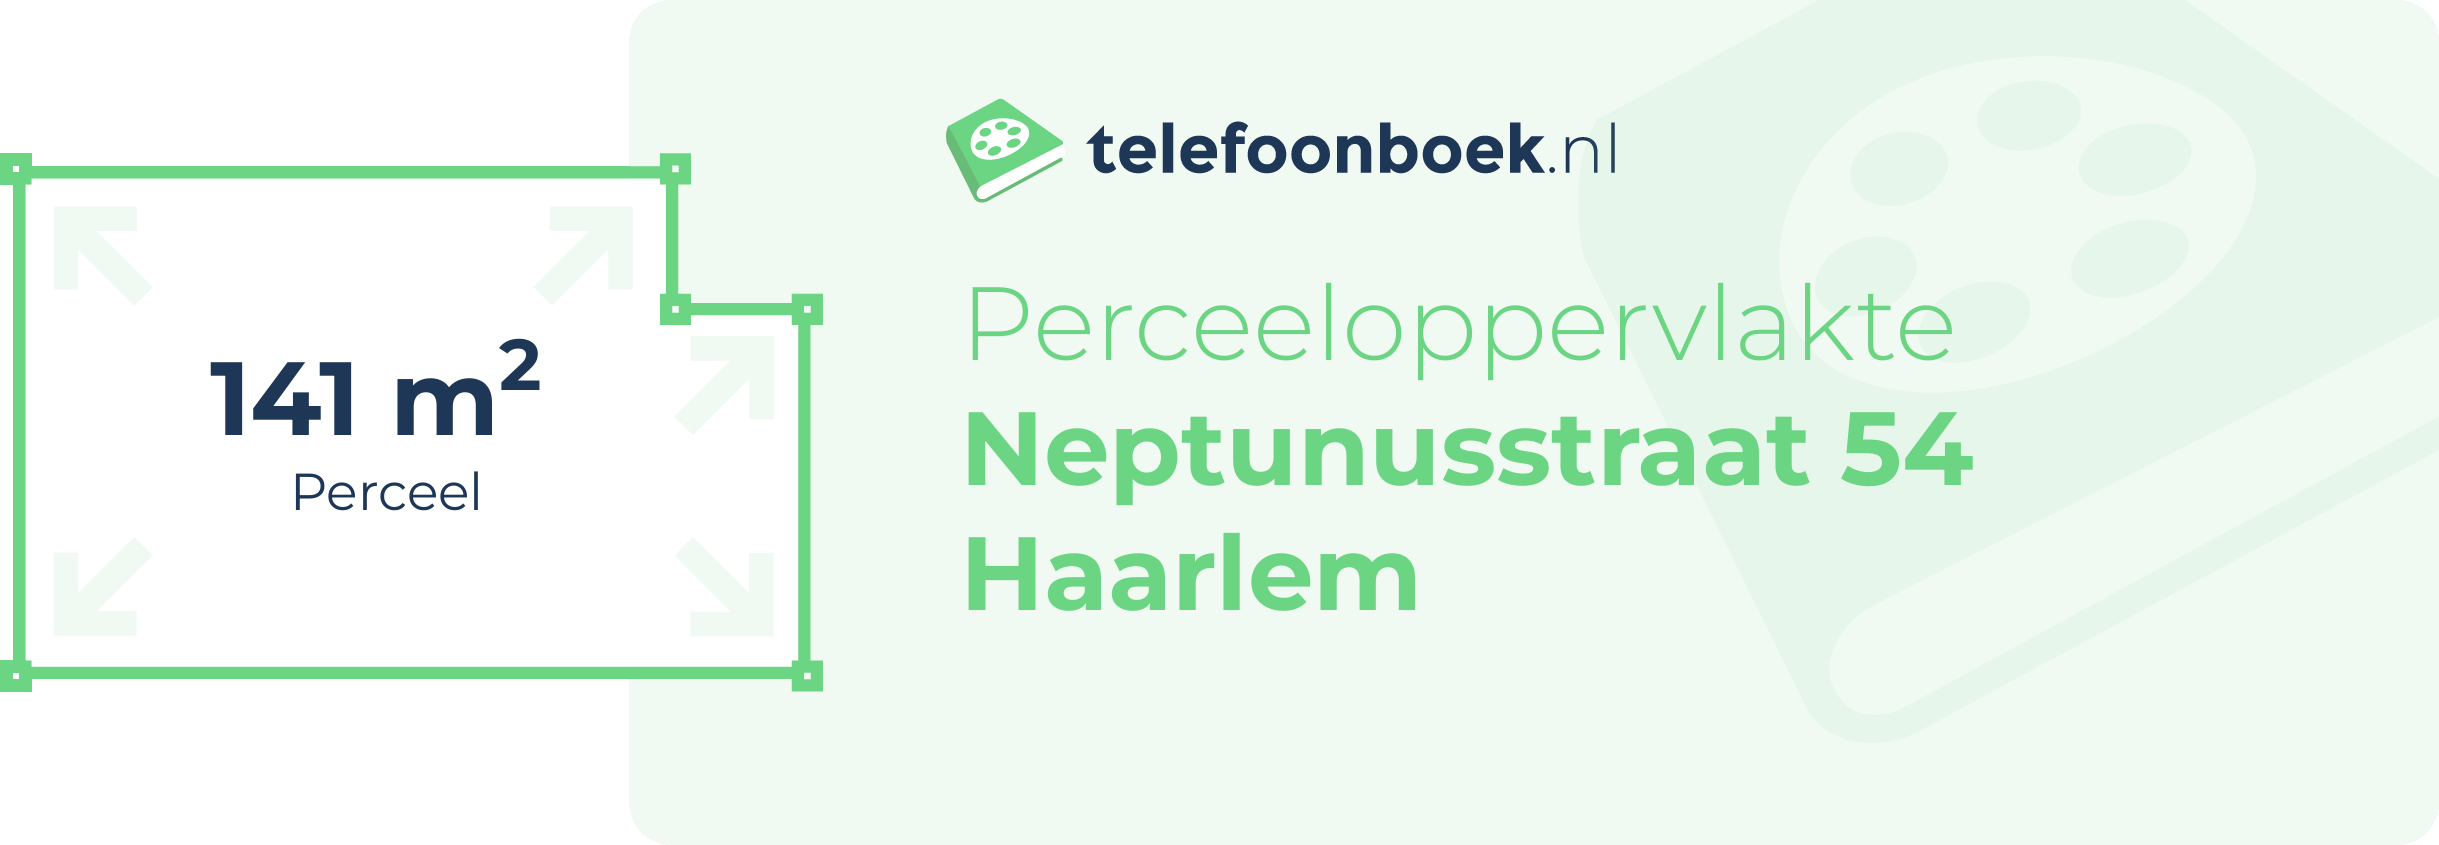 Perceeloppervlakte Neptunusstraat 54 Haarlem